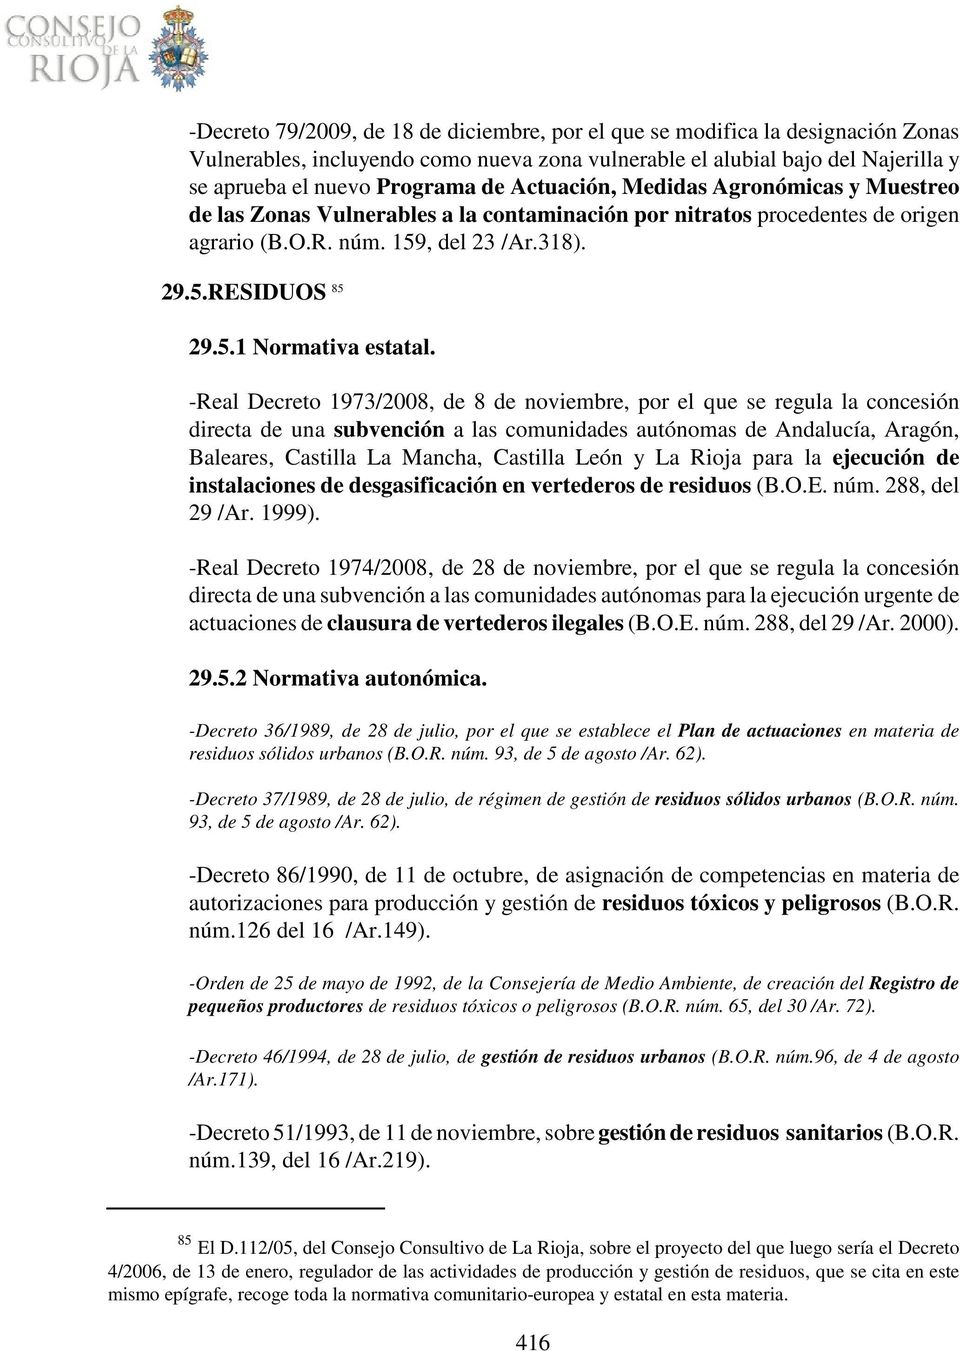 -Real Decreto 1973/2008, de 8 de noviembre, por el que se regula la concesión directa de una subvención a las comunidades autónomas de Andalucía, Aragón, Baleares, Castilla La Mancha, Castilla León y